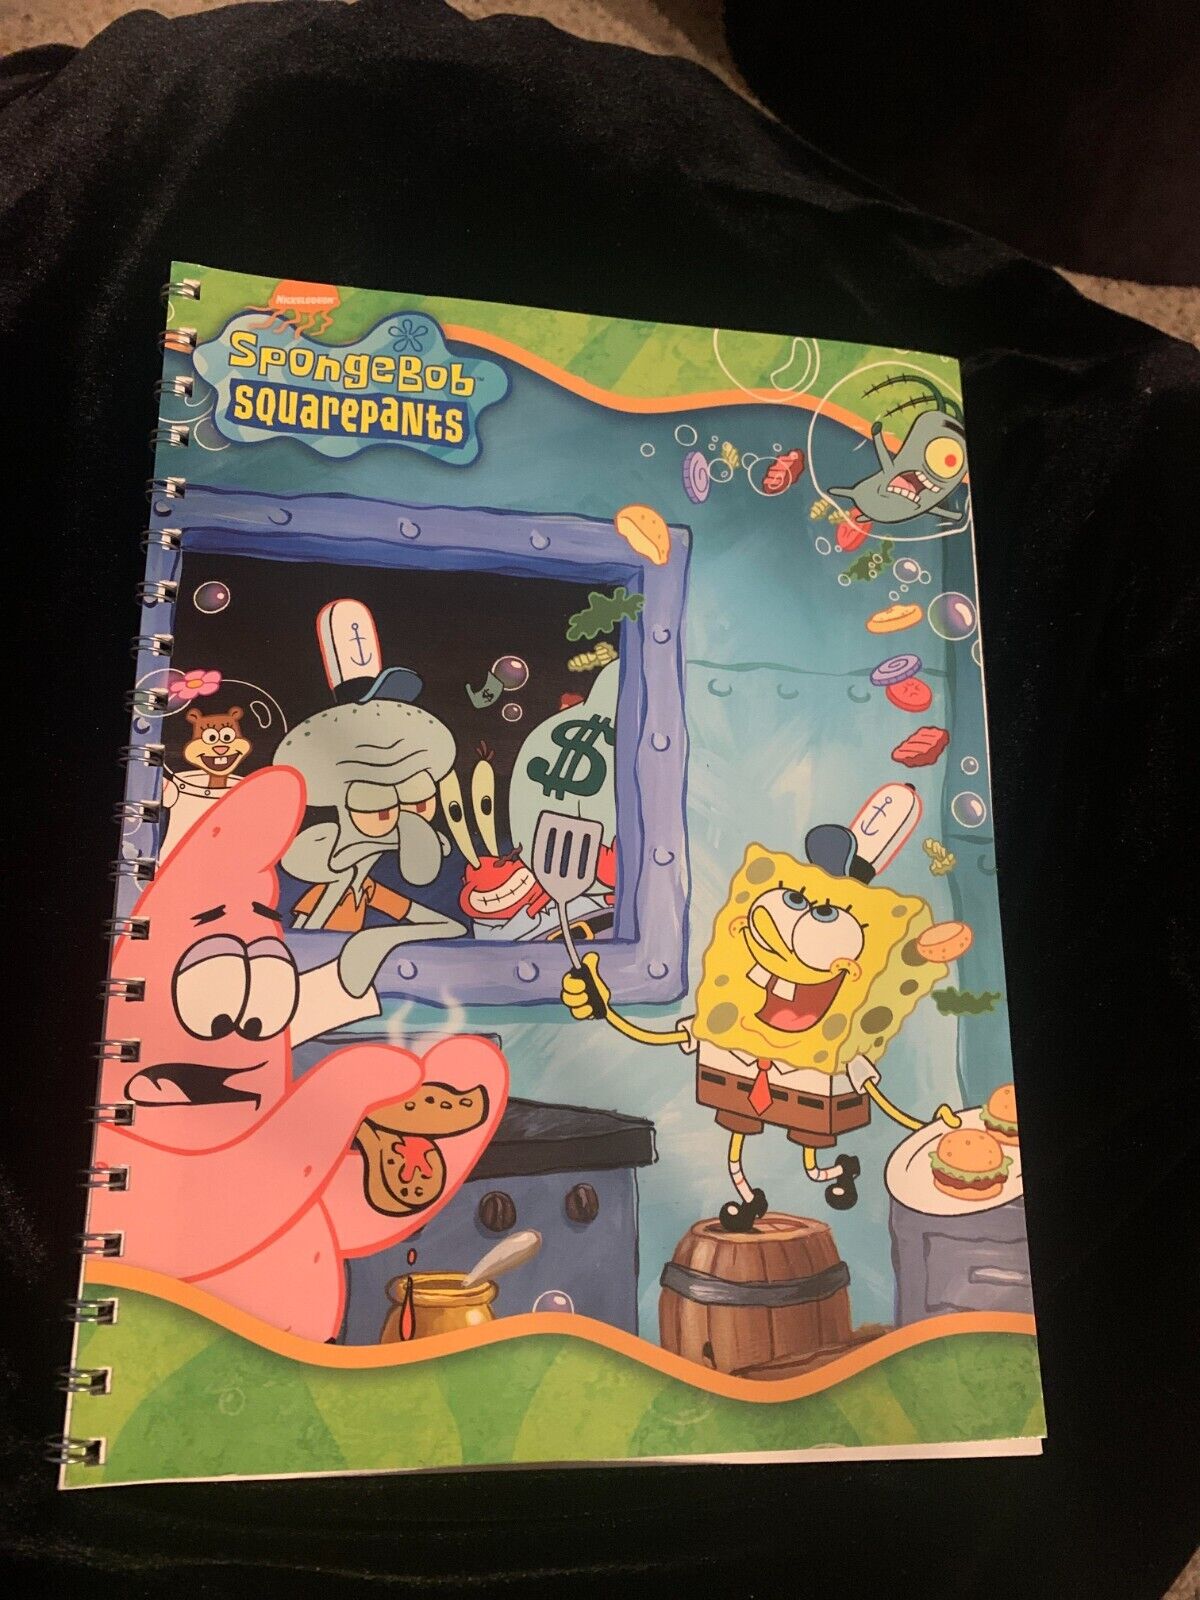 RARE 2001 Viacom SpongeBob SquarePants Spiral Notebook